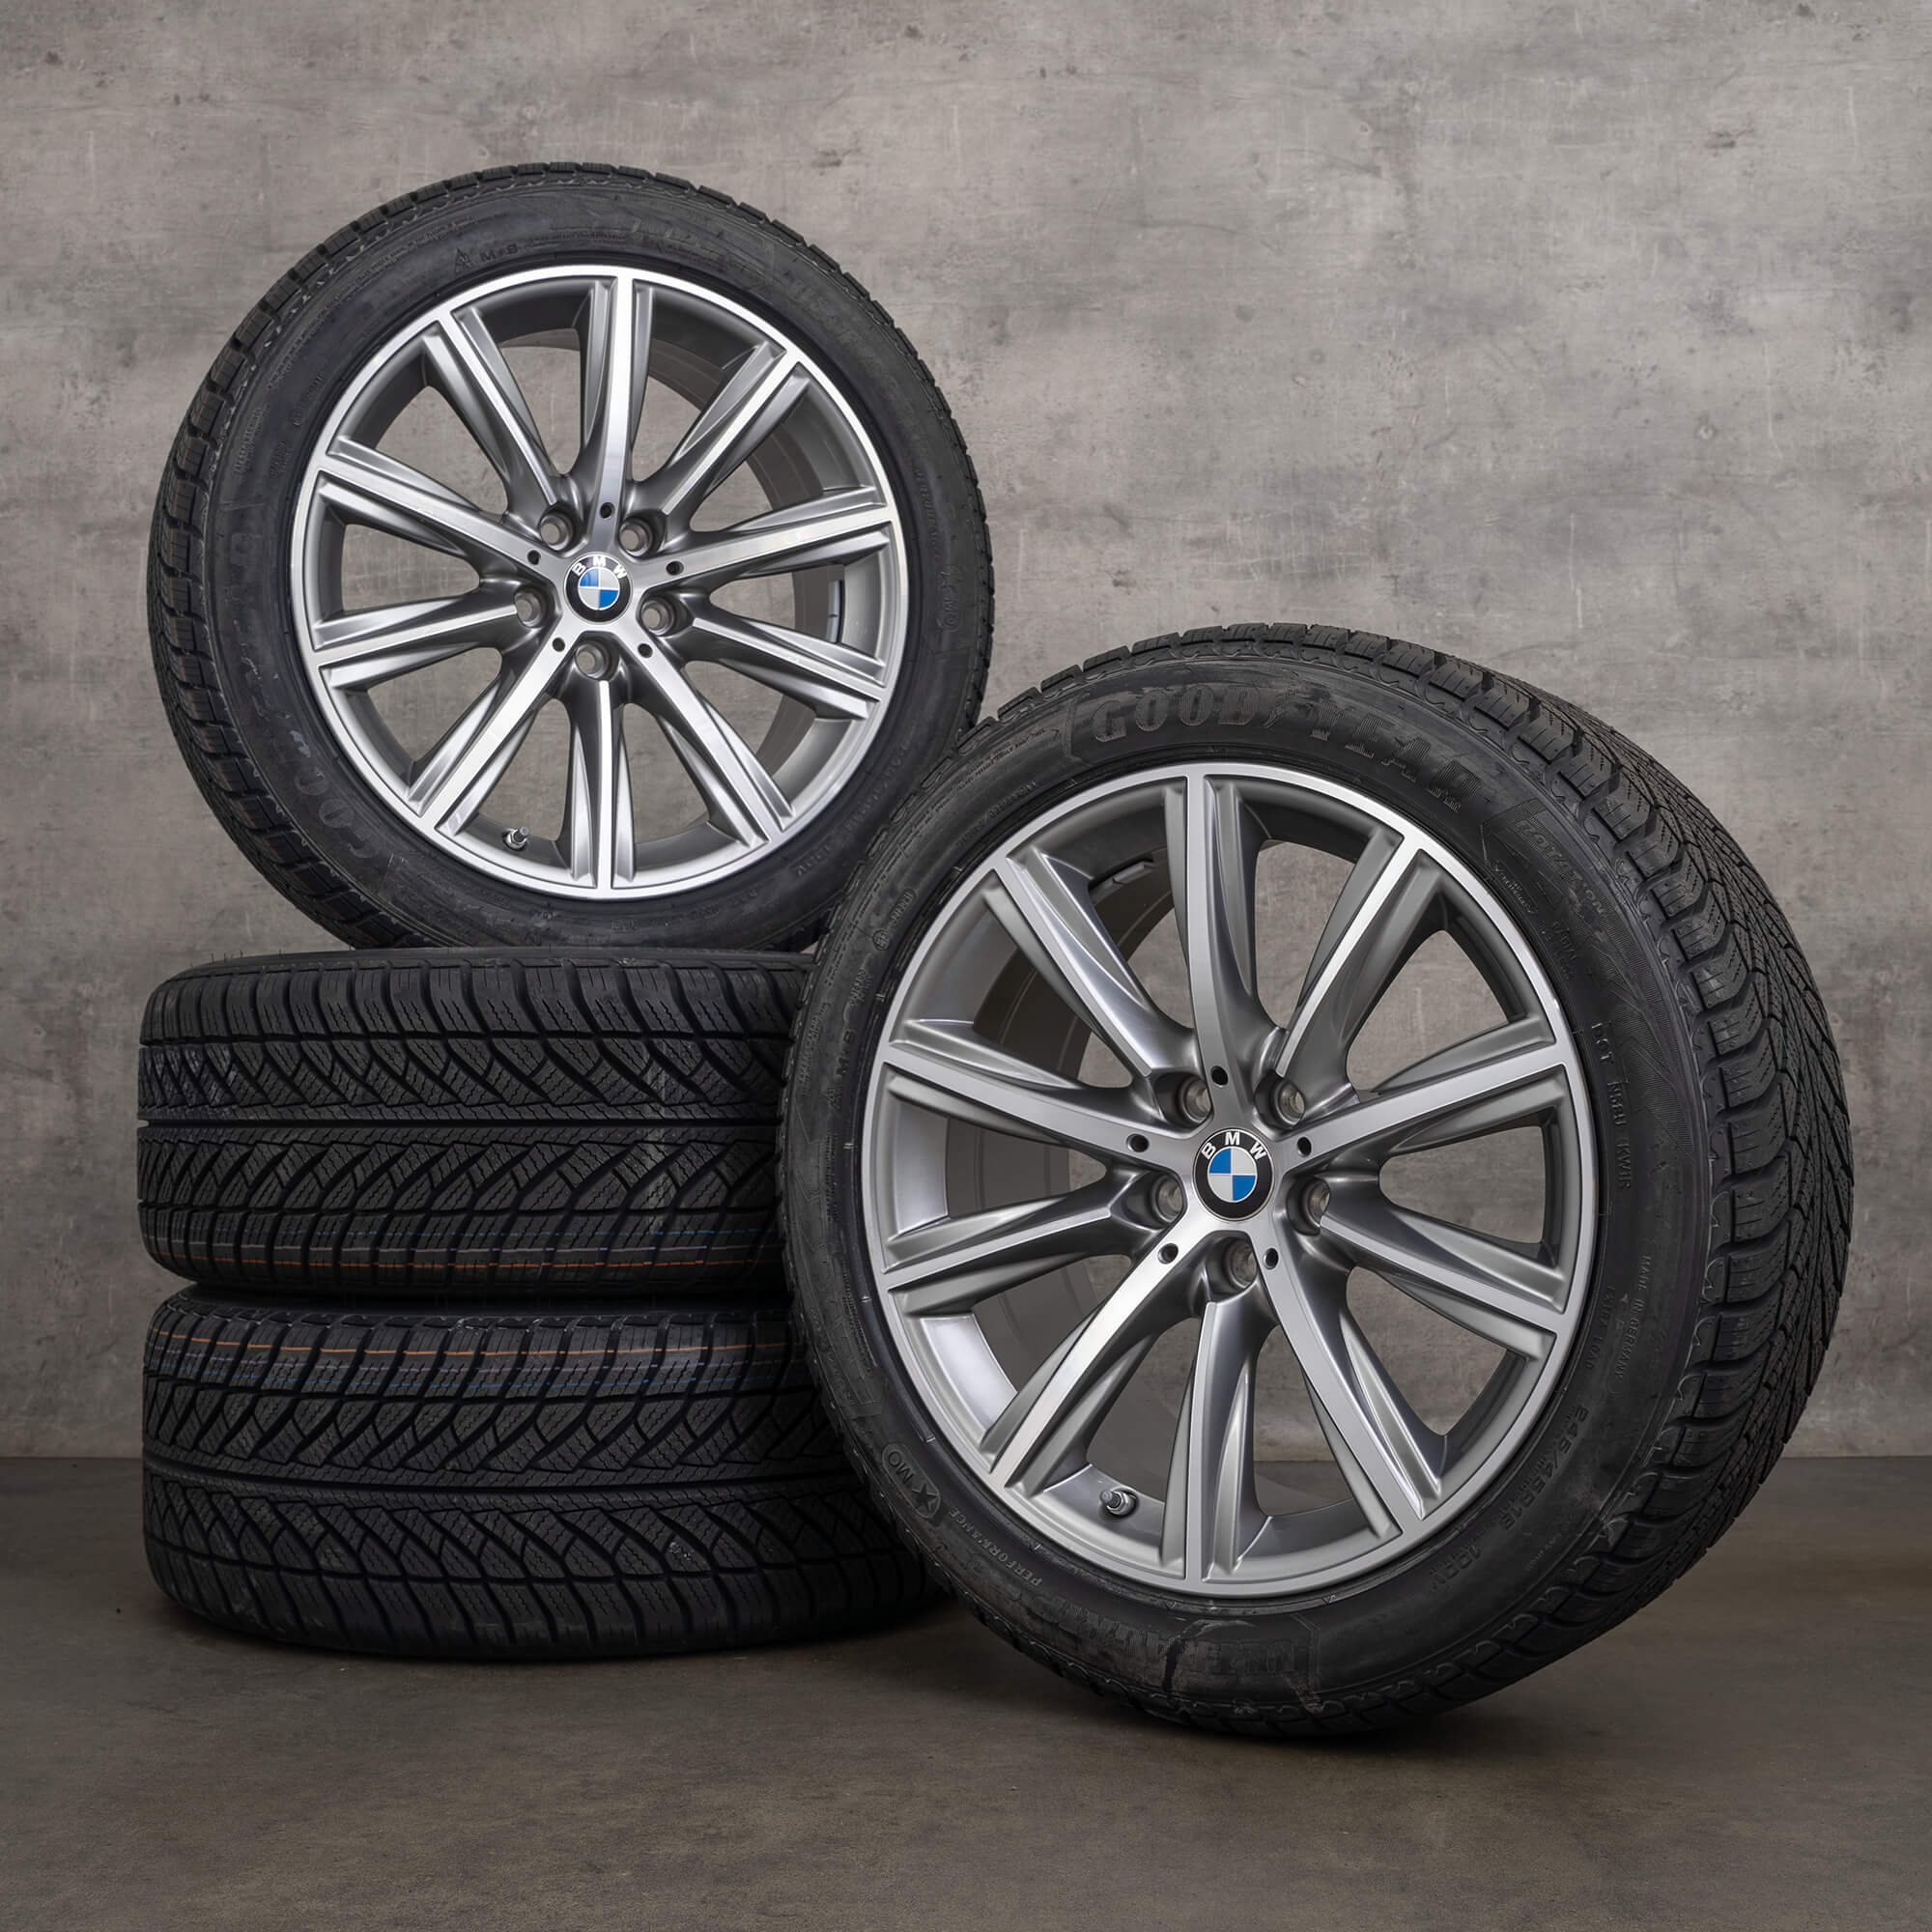 Jantes de pneus inverno originais BMW Série 5 G30 G31 18 polegadas com estilo